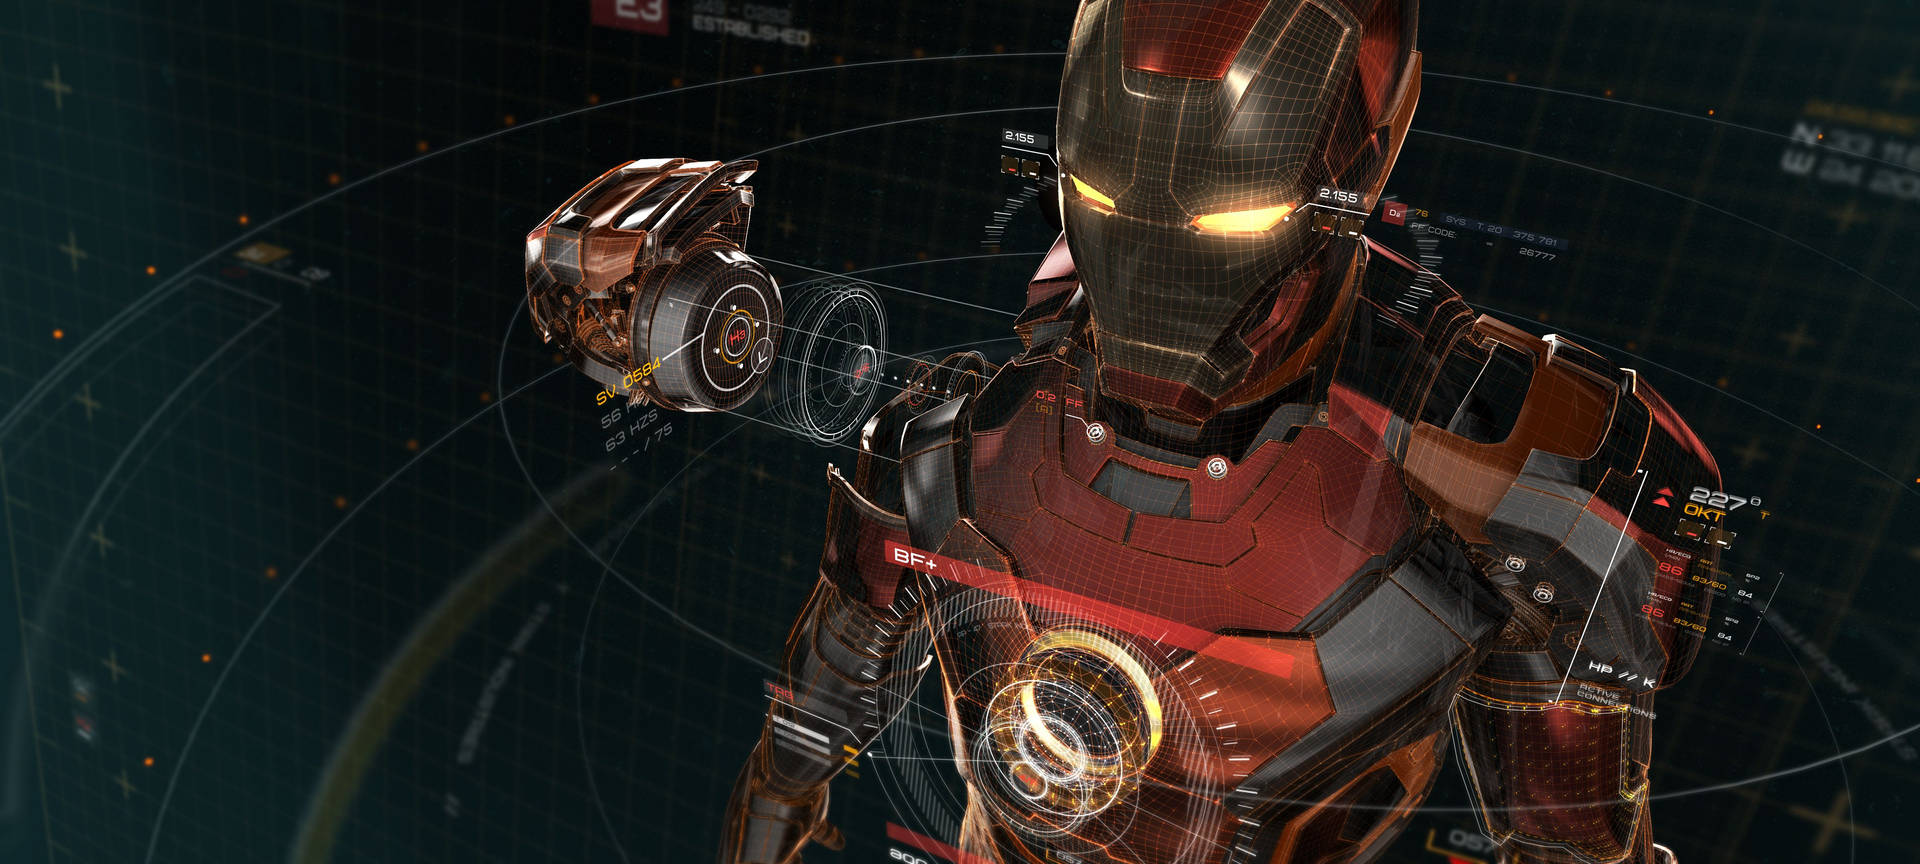 Download Iron Man Wallpaper